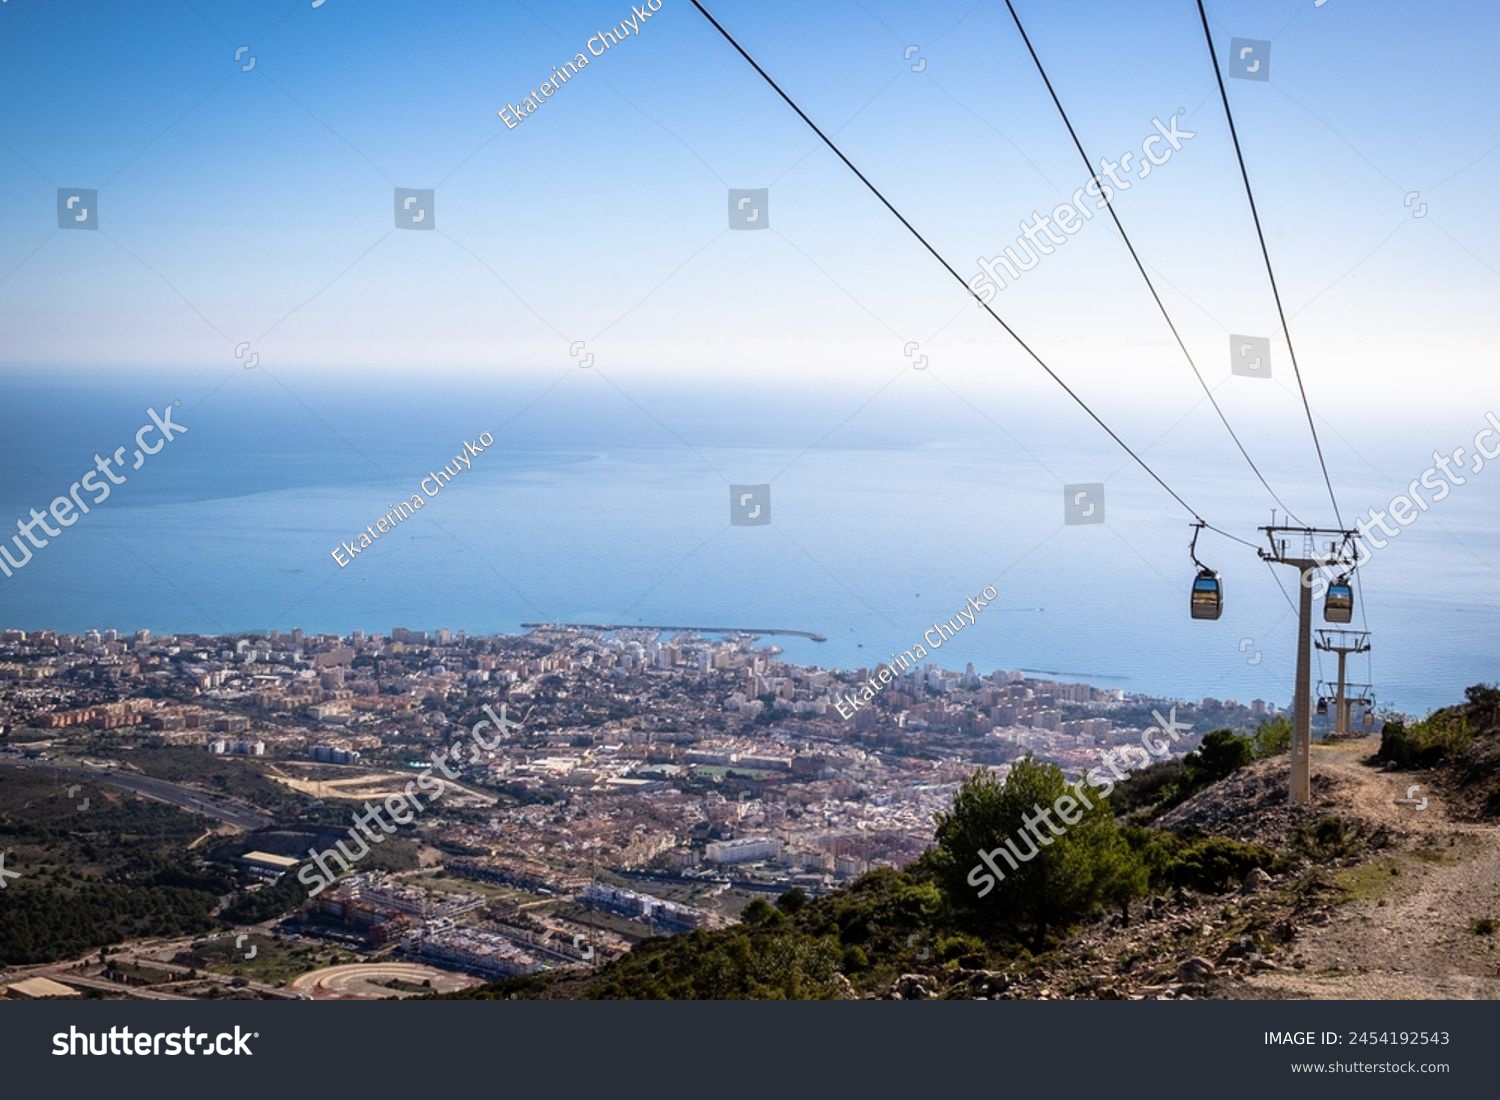 Image of cableway at Benalmadena, Andalusia, Spain #2454192543